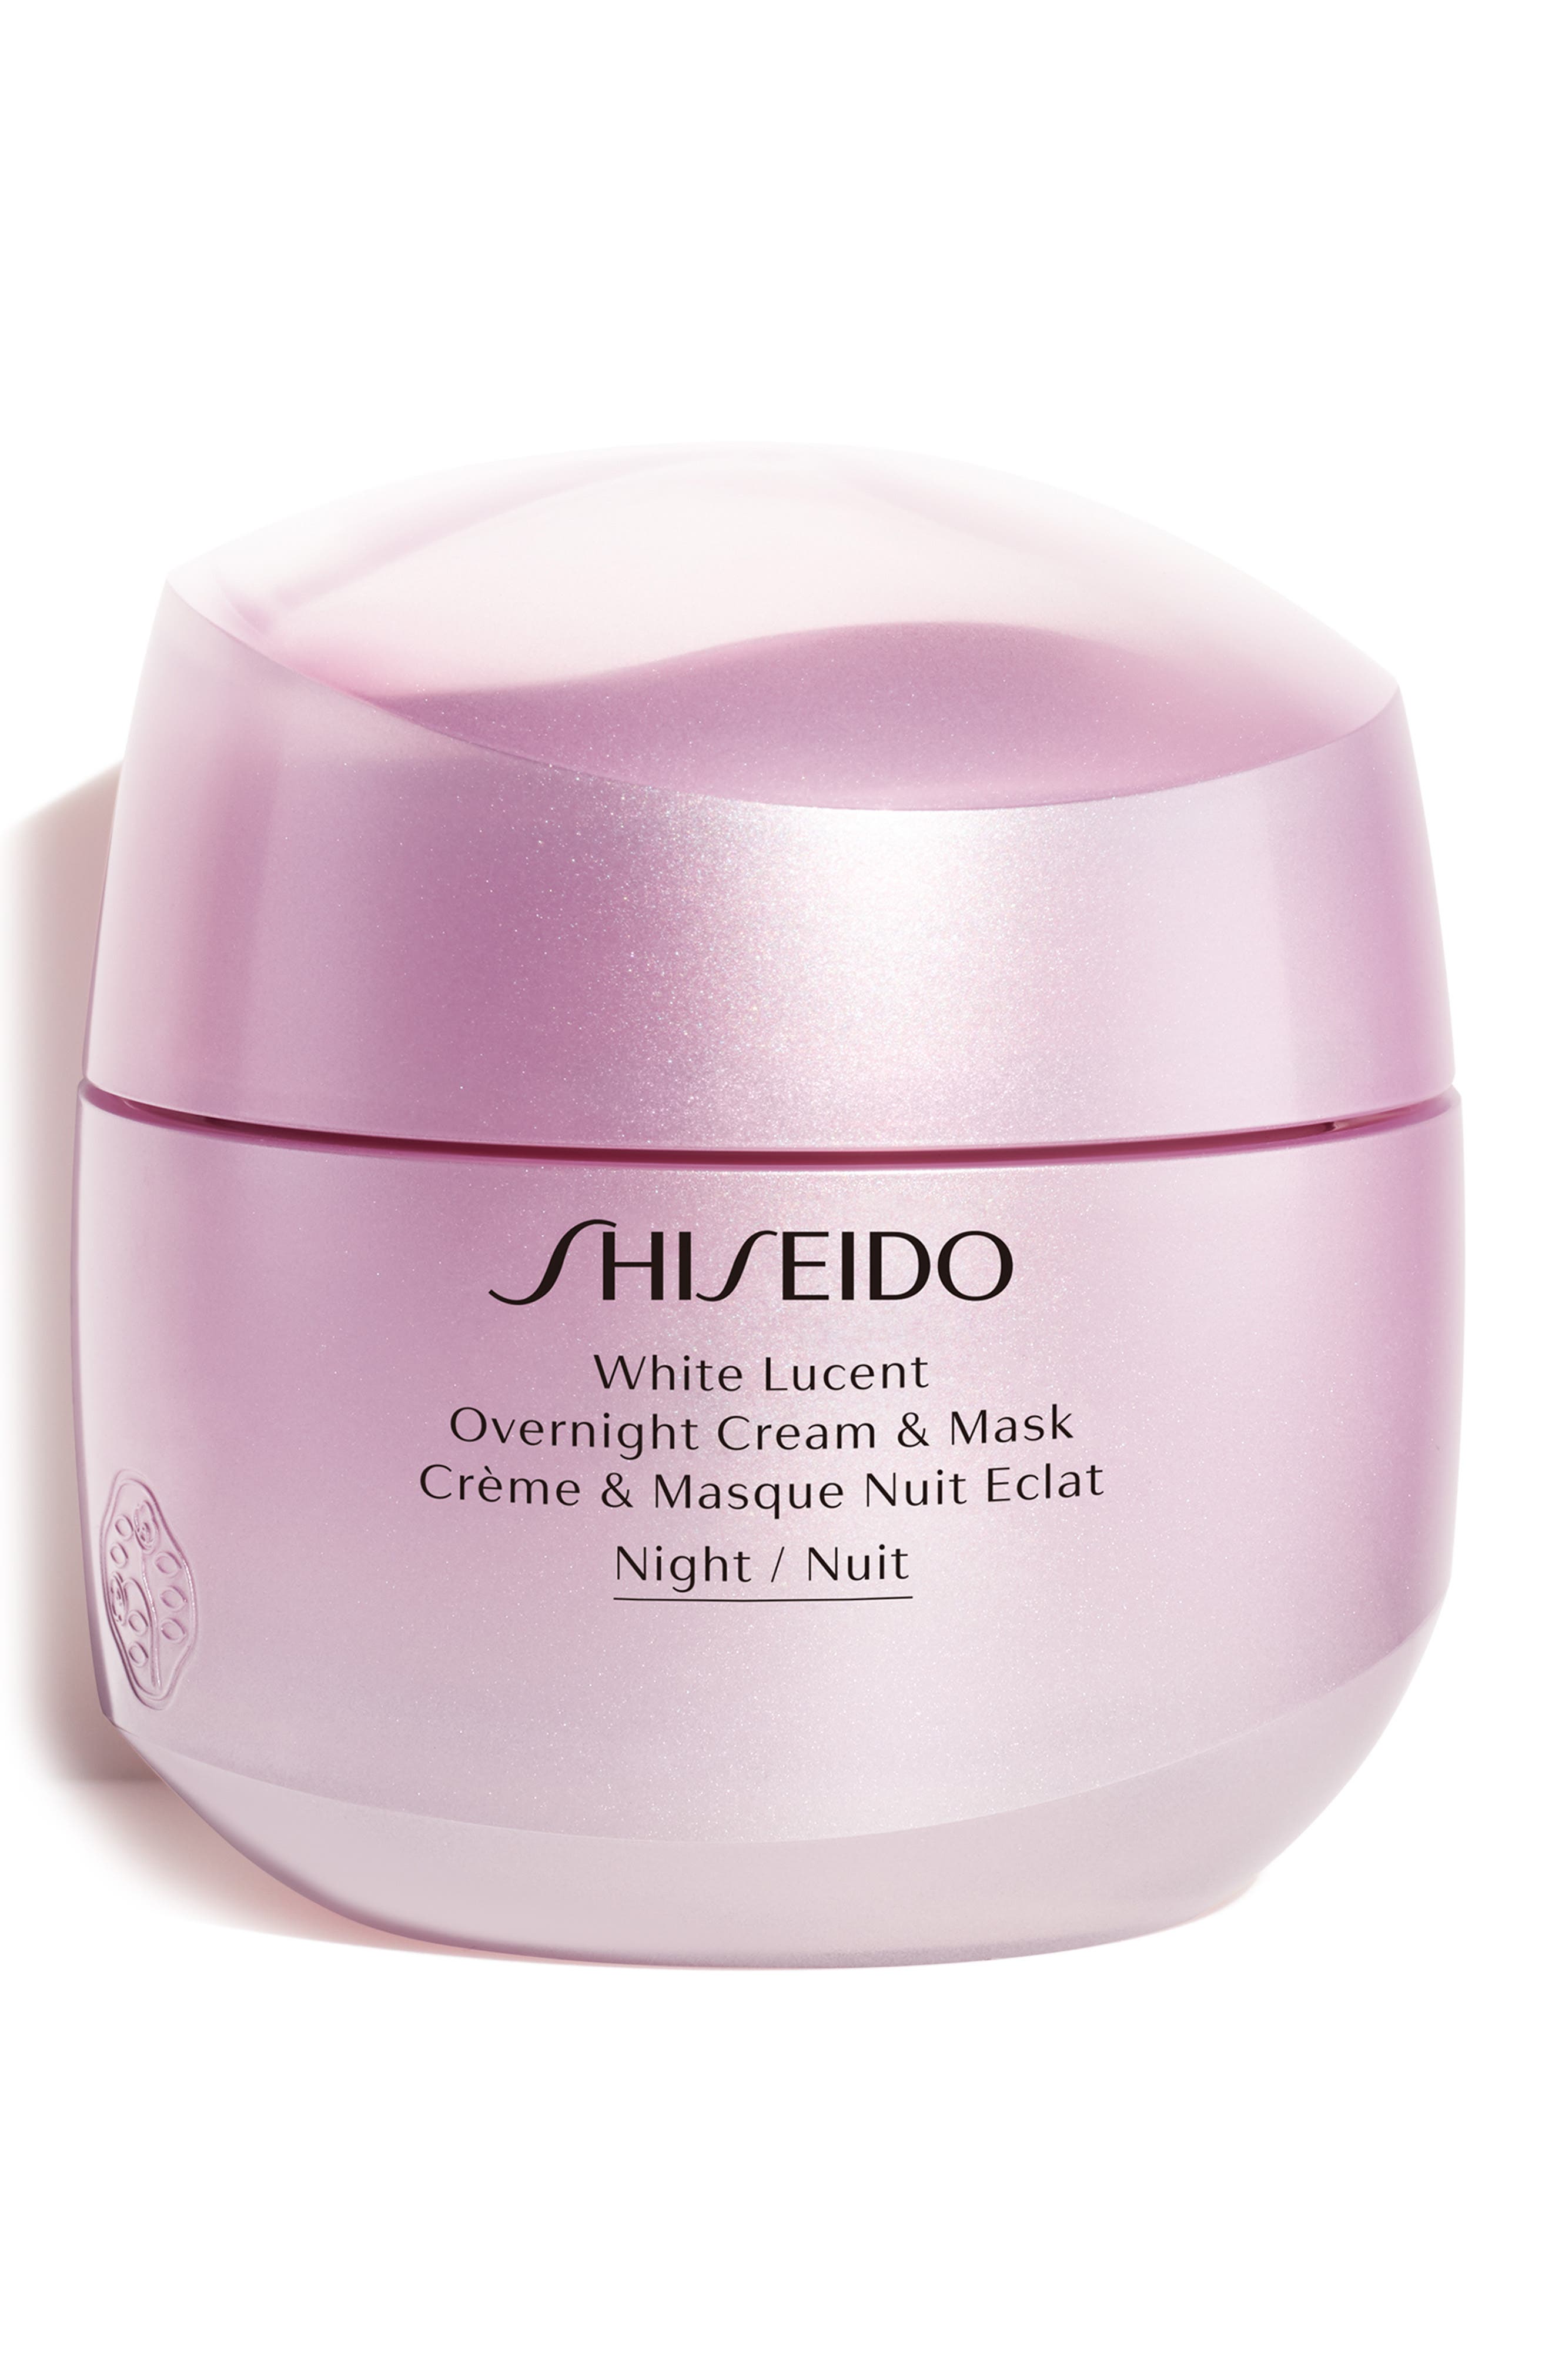 Shiseido White Lucent Overnight Cream & Mask at Nordstrom